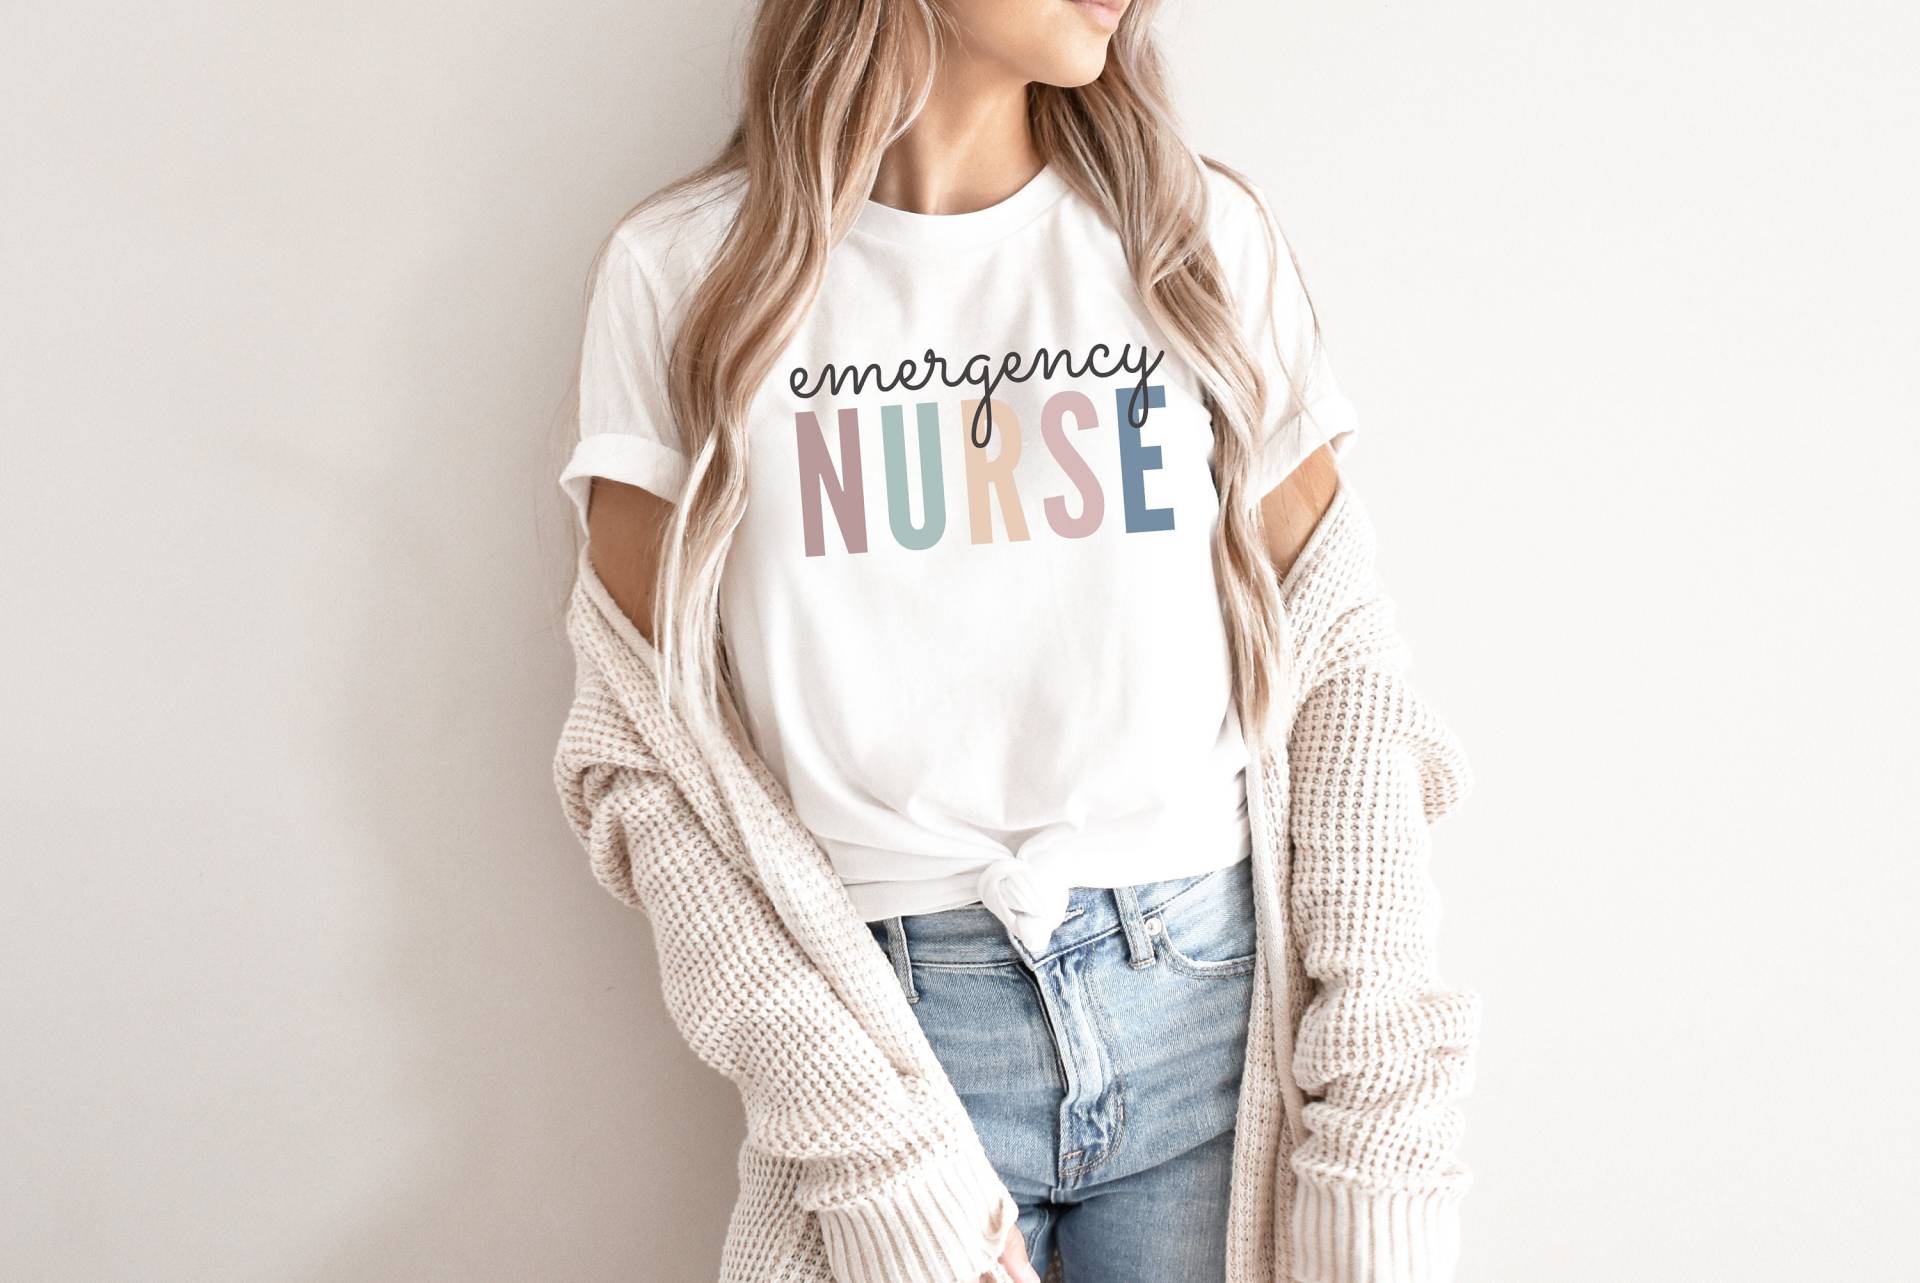 Notfall Krankenschwester Shirt, Geschenk Für Krankenschwester, Er Emerg Nurse T-Shirt, Leben, Trauma Registrierte Geschenk, Abschlussgeschenk von IronHorseStudios